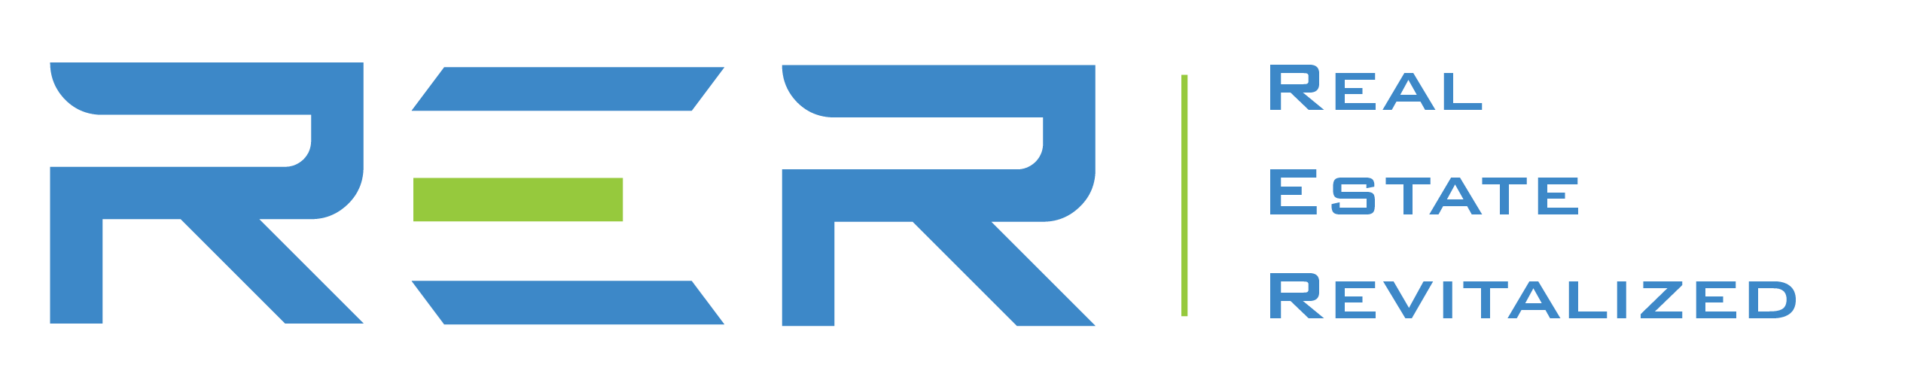 Real Estate, Revitalized logo